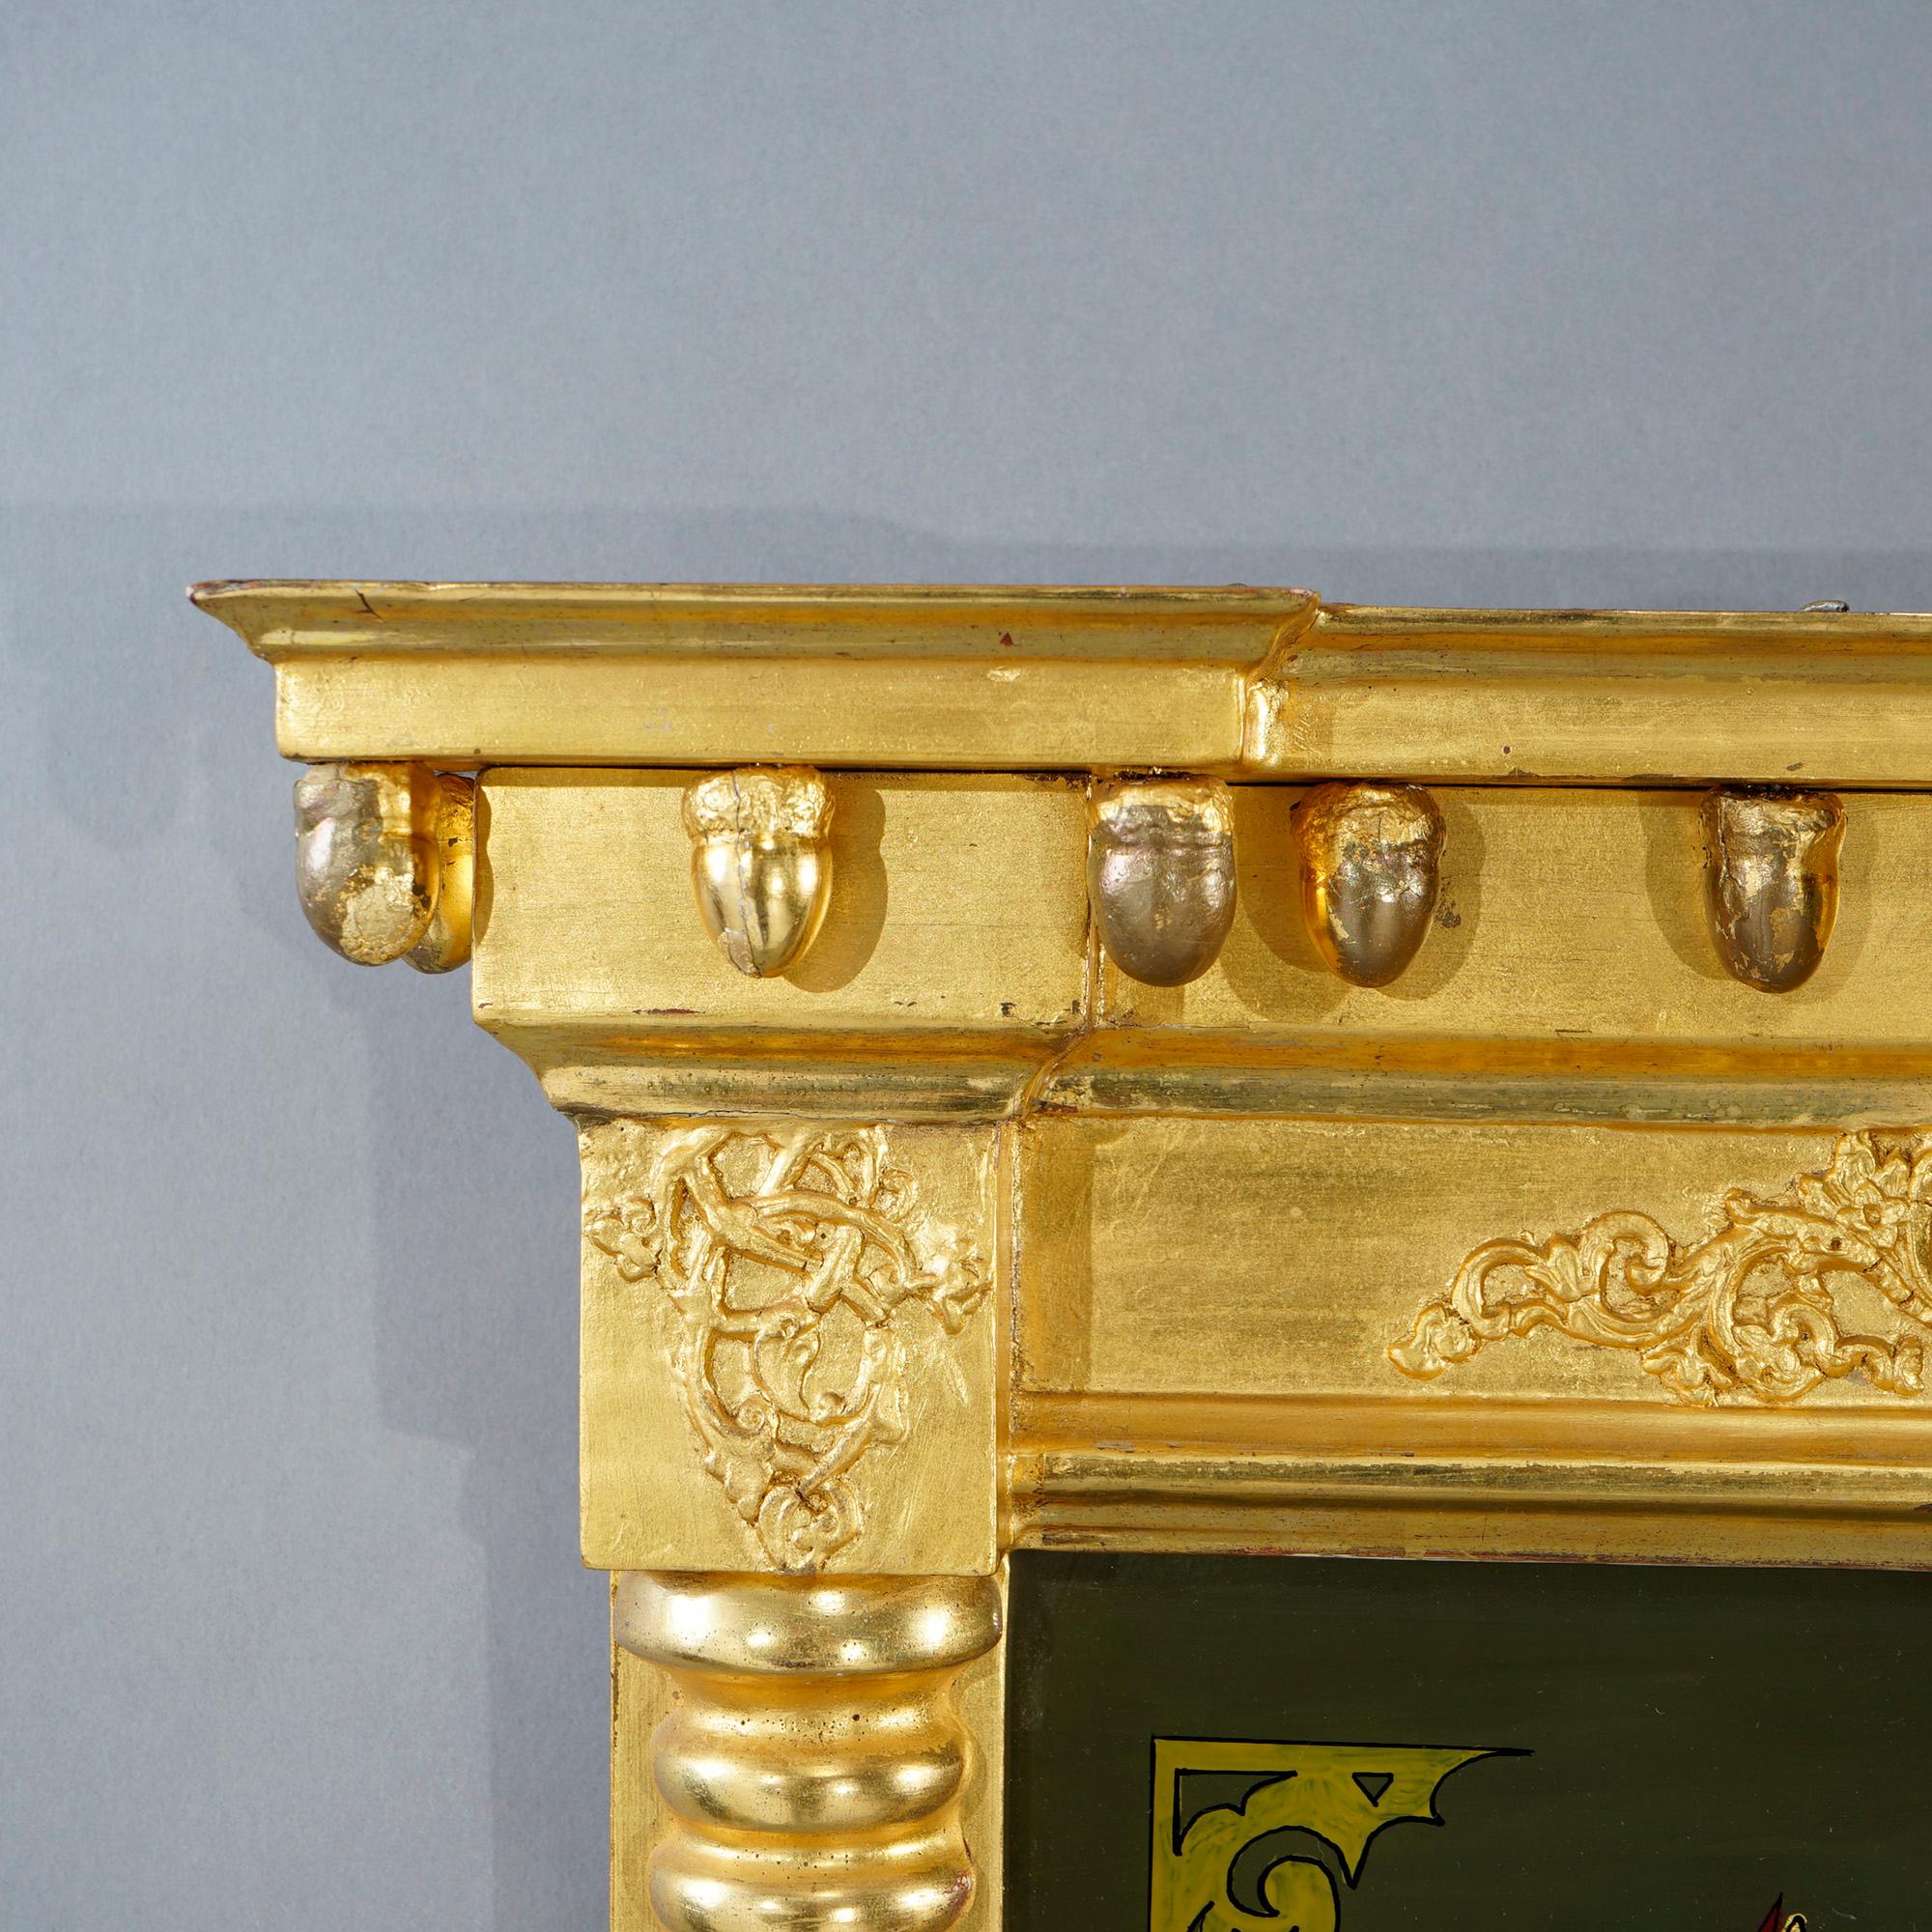 Un miroir antique Empire américain Trumeau offre un cadre en forme de colonne en bois doré avec la partie supérieure ayant une nature morte florale peinte au revers, 19ème siècle.

Mesures - 34,5''H x 18,5''W x 3,5''D.